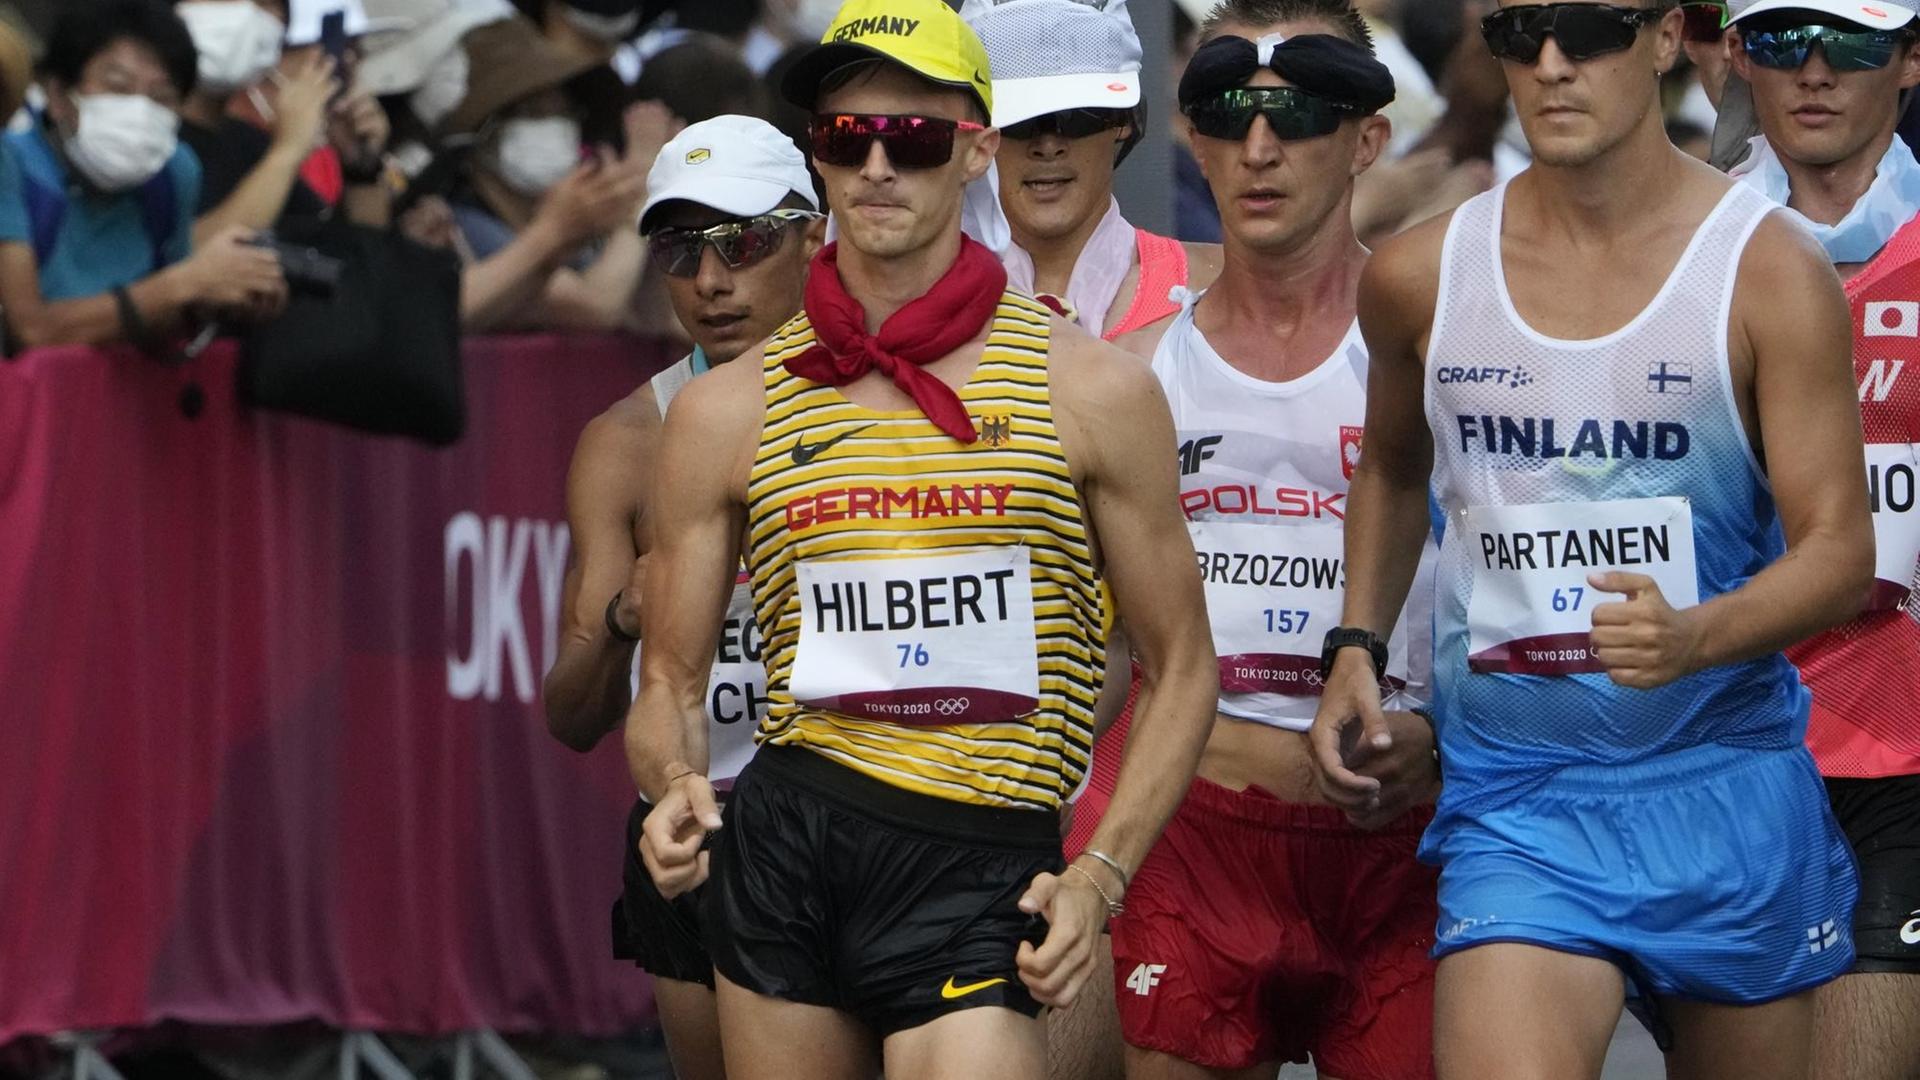 Der deutsche Geher Jonathan Hilbert in Aktion, um ihn herum sind weitere Athleten zu sehen.